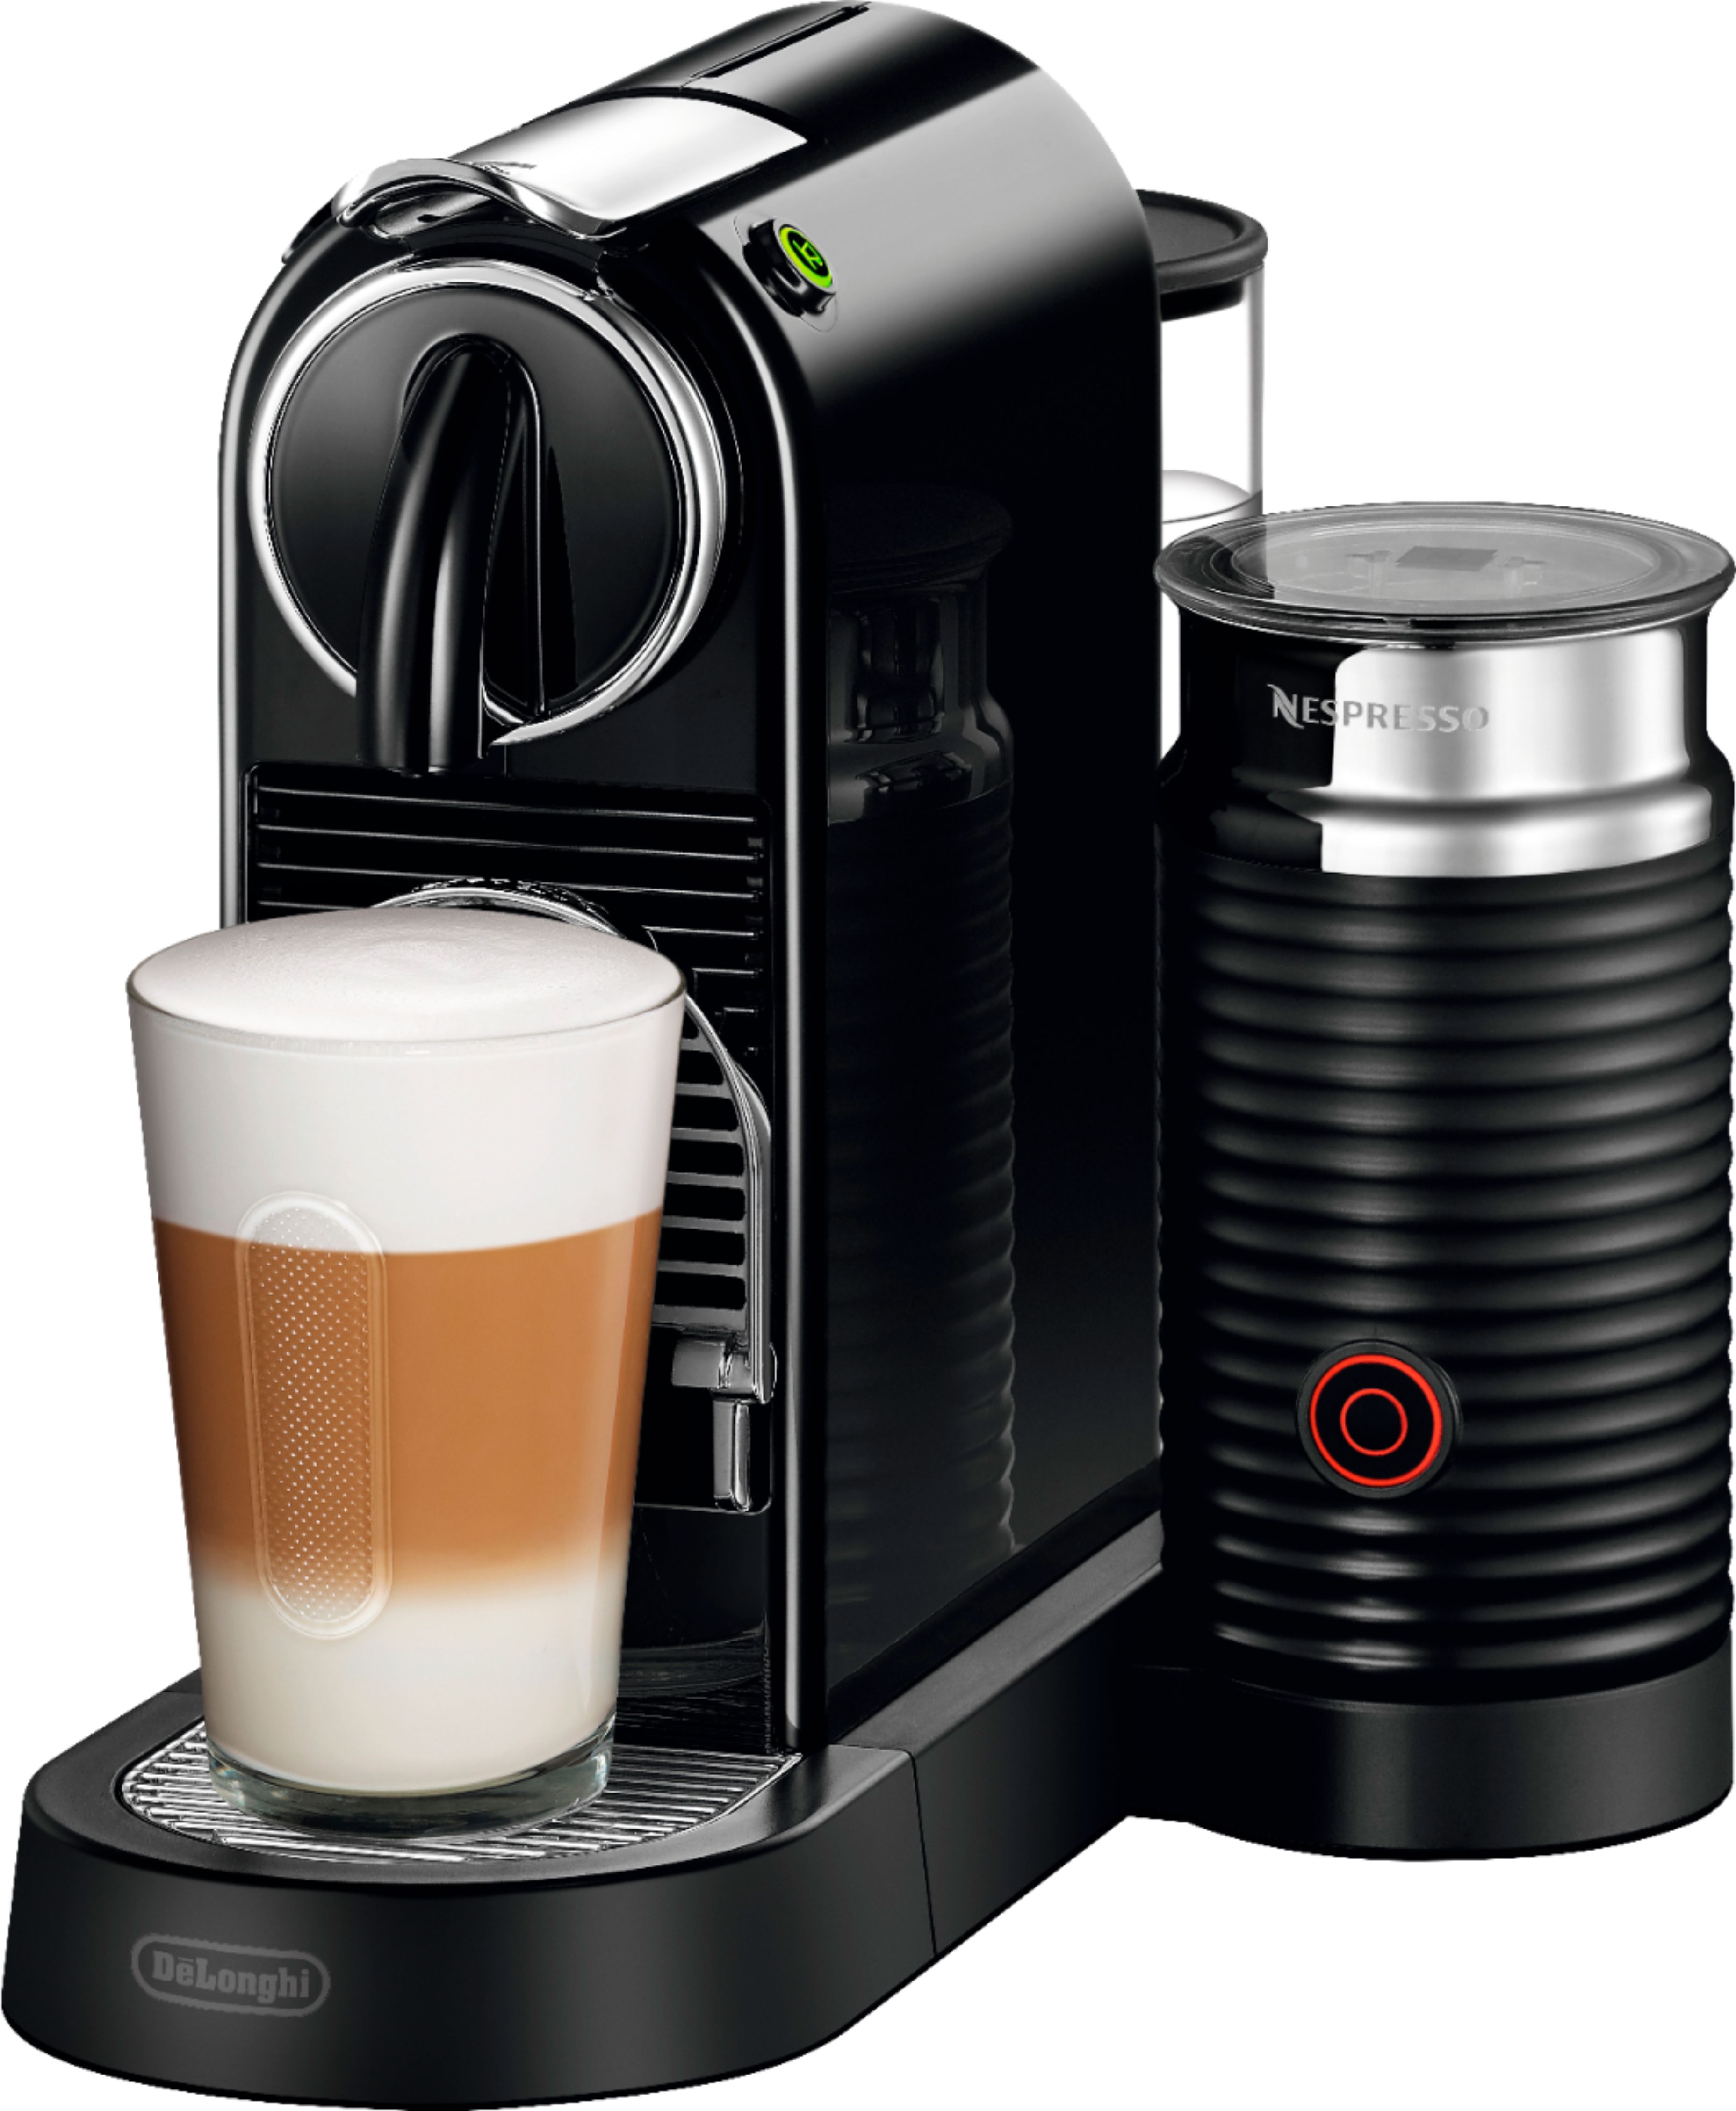 nespresso coffee machine